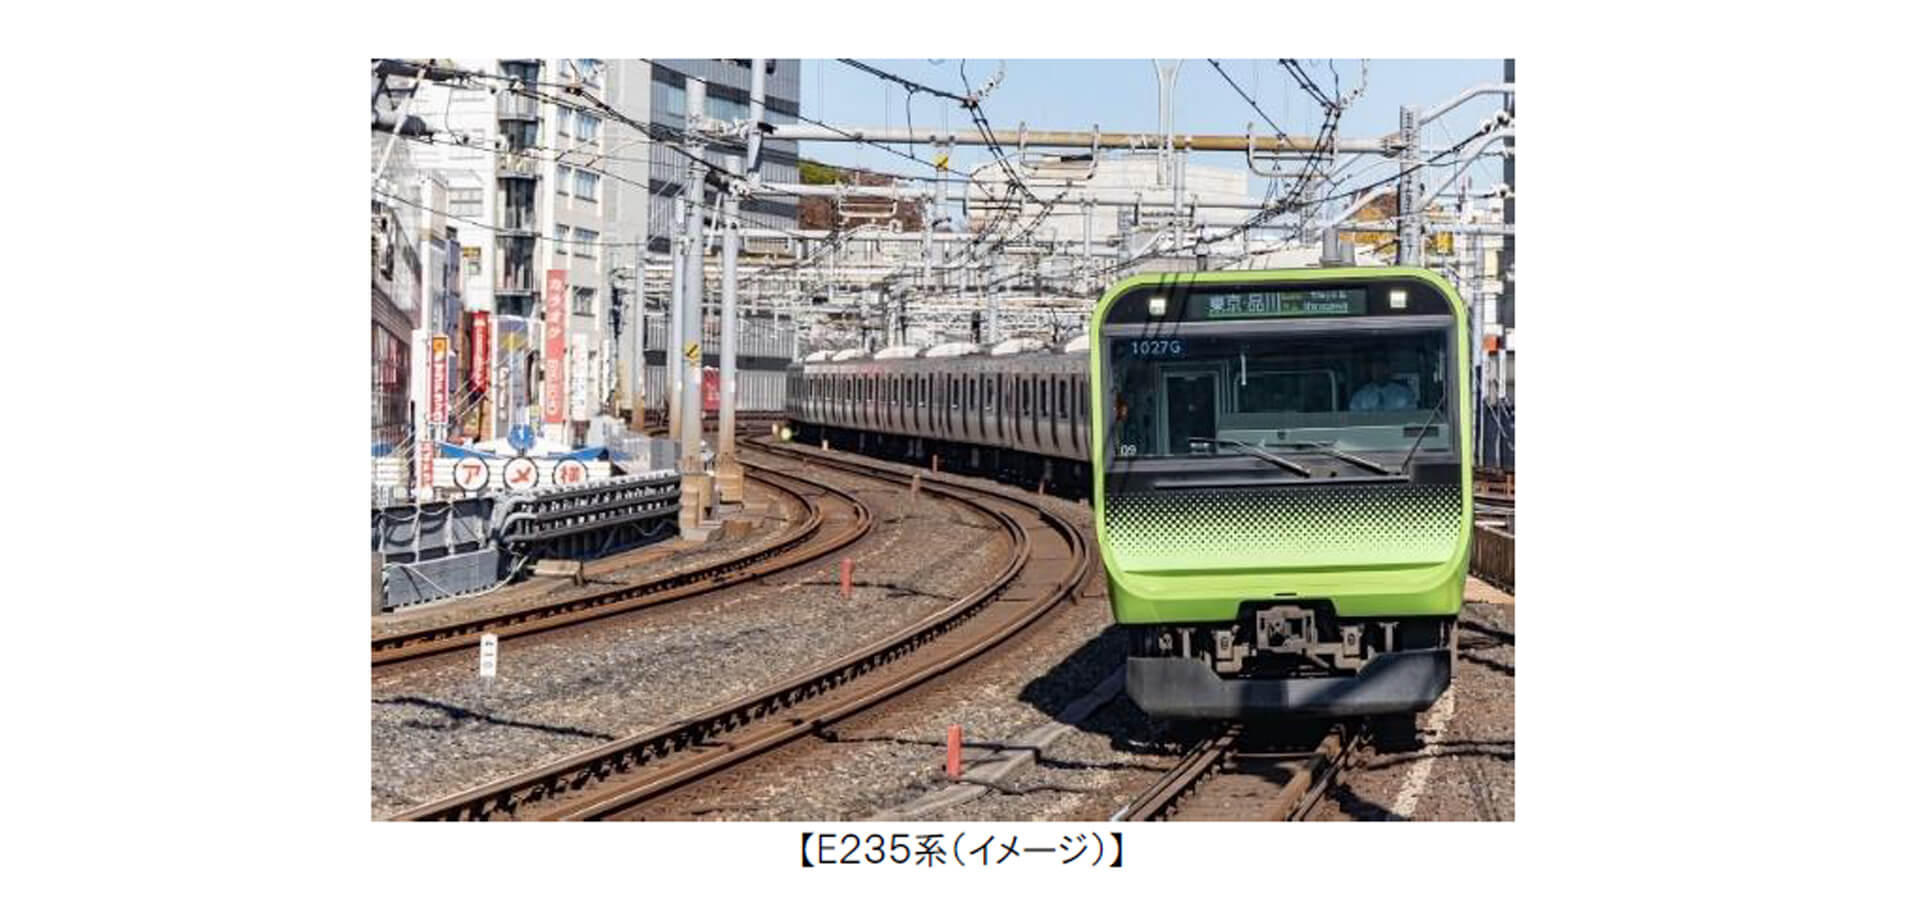 東京まるっと山手線 走行する電車